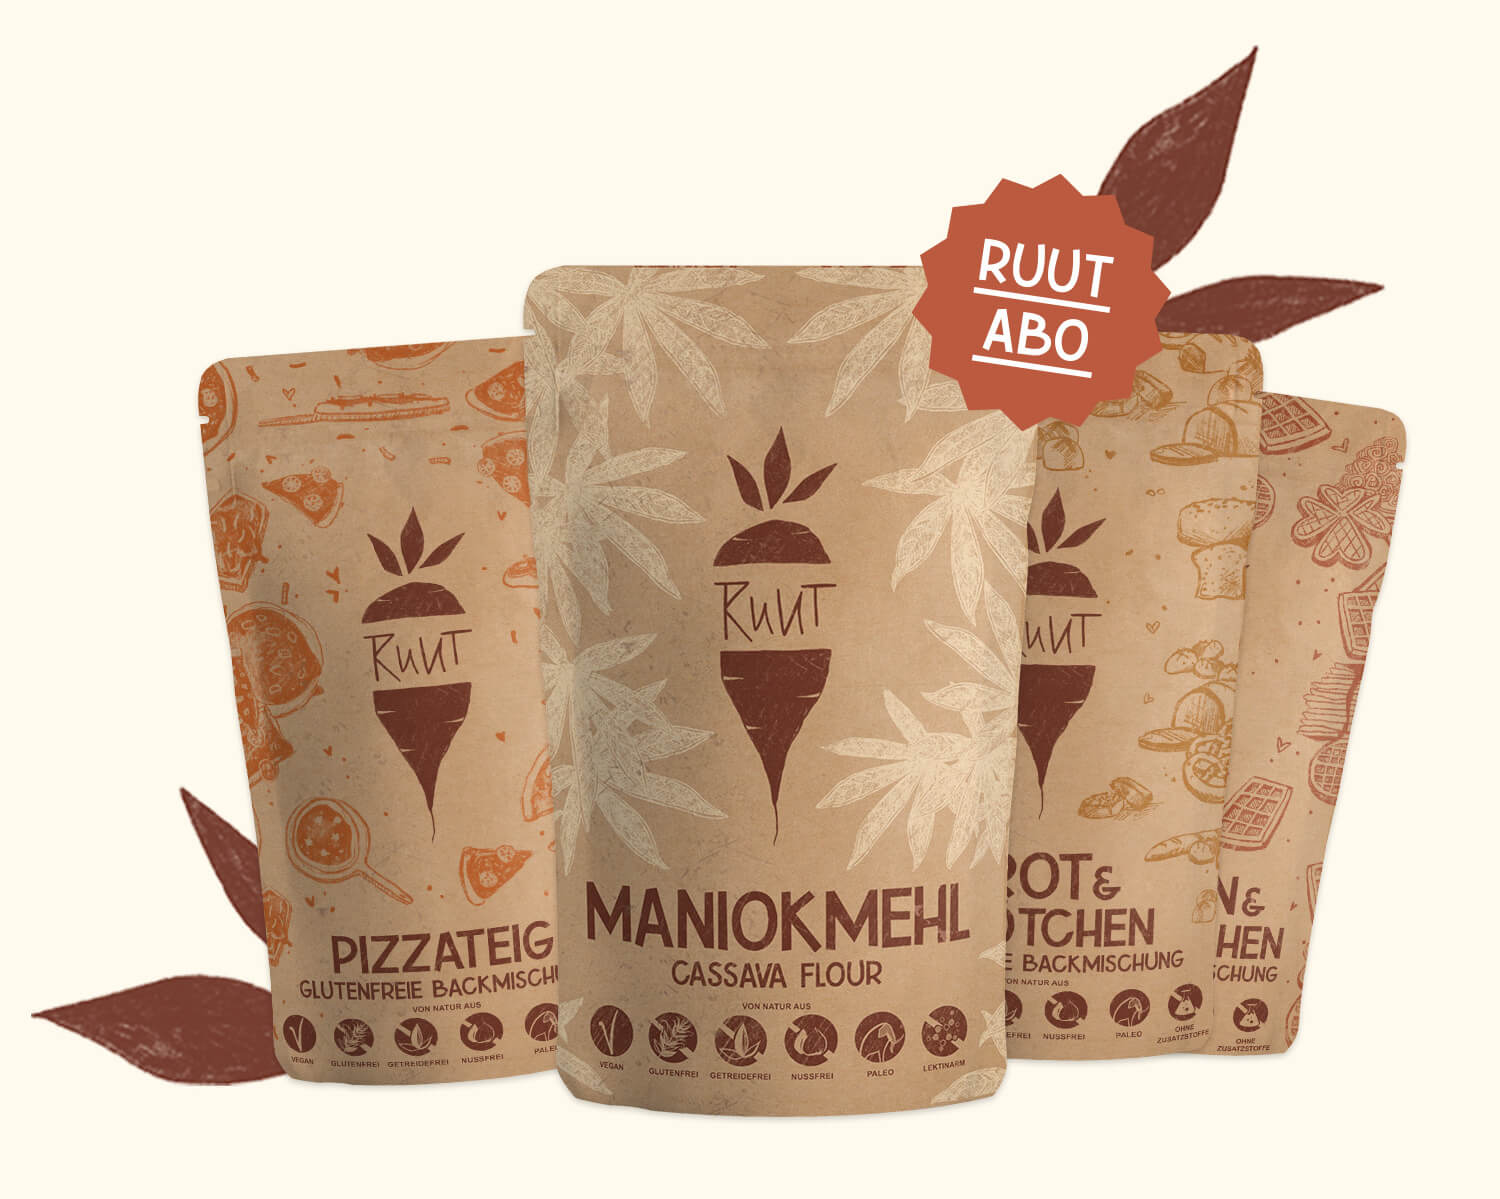 Glutenfreie Produkte von Ruut kaufen - Maniokmehl und Backmischungen glutenfrei